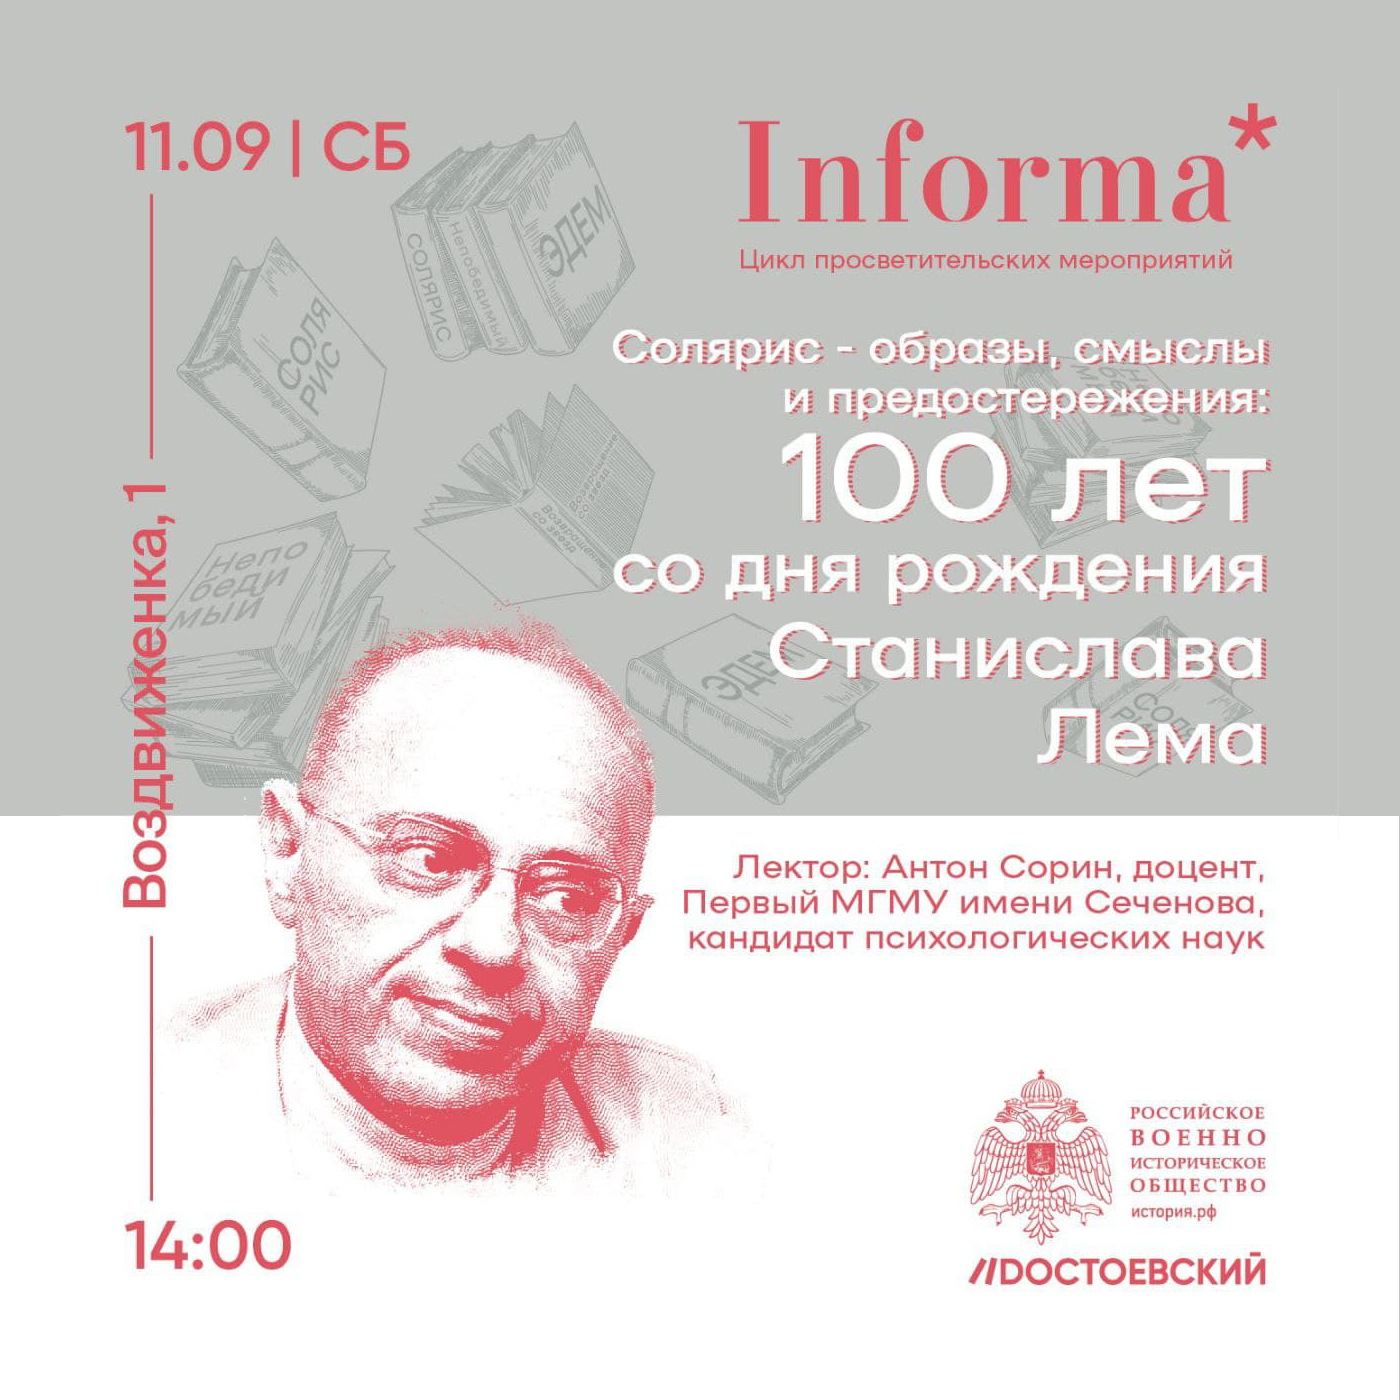 Лекция-дискуссия "Солярис - образы, смыслы и предостережения: 100 лет со дня рождения Станислава Лема"